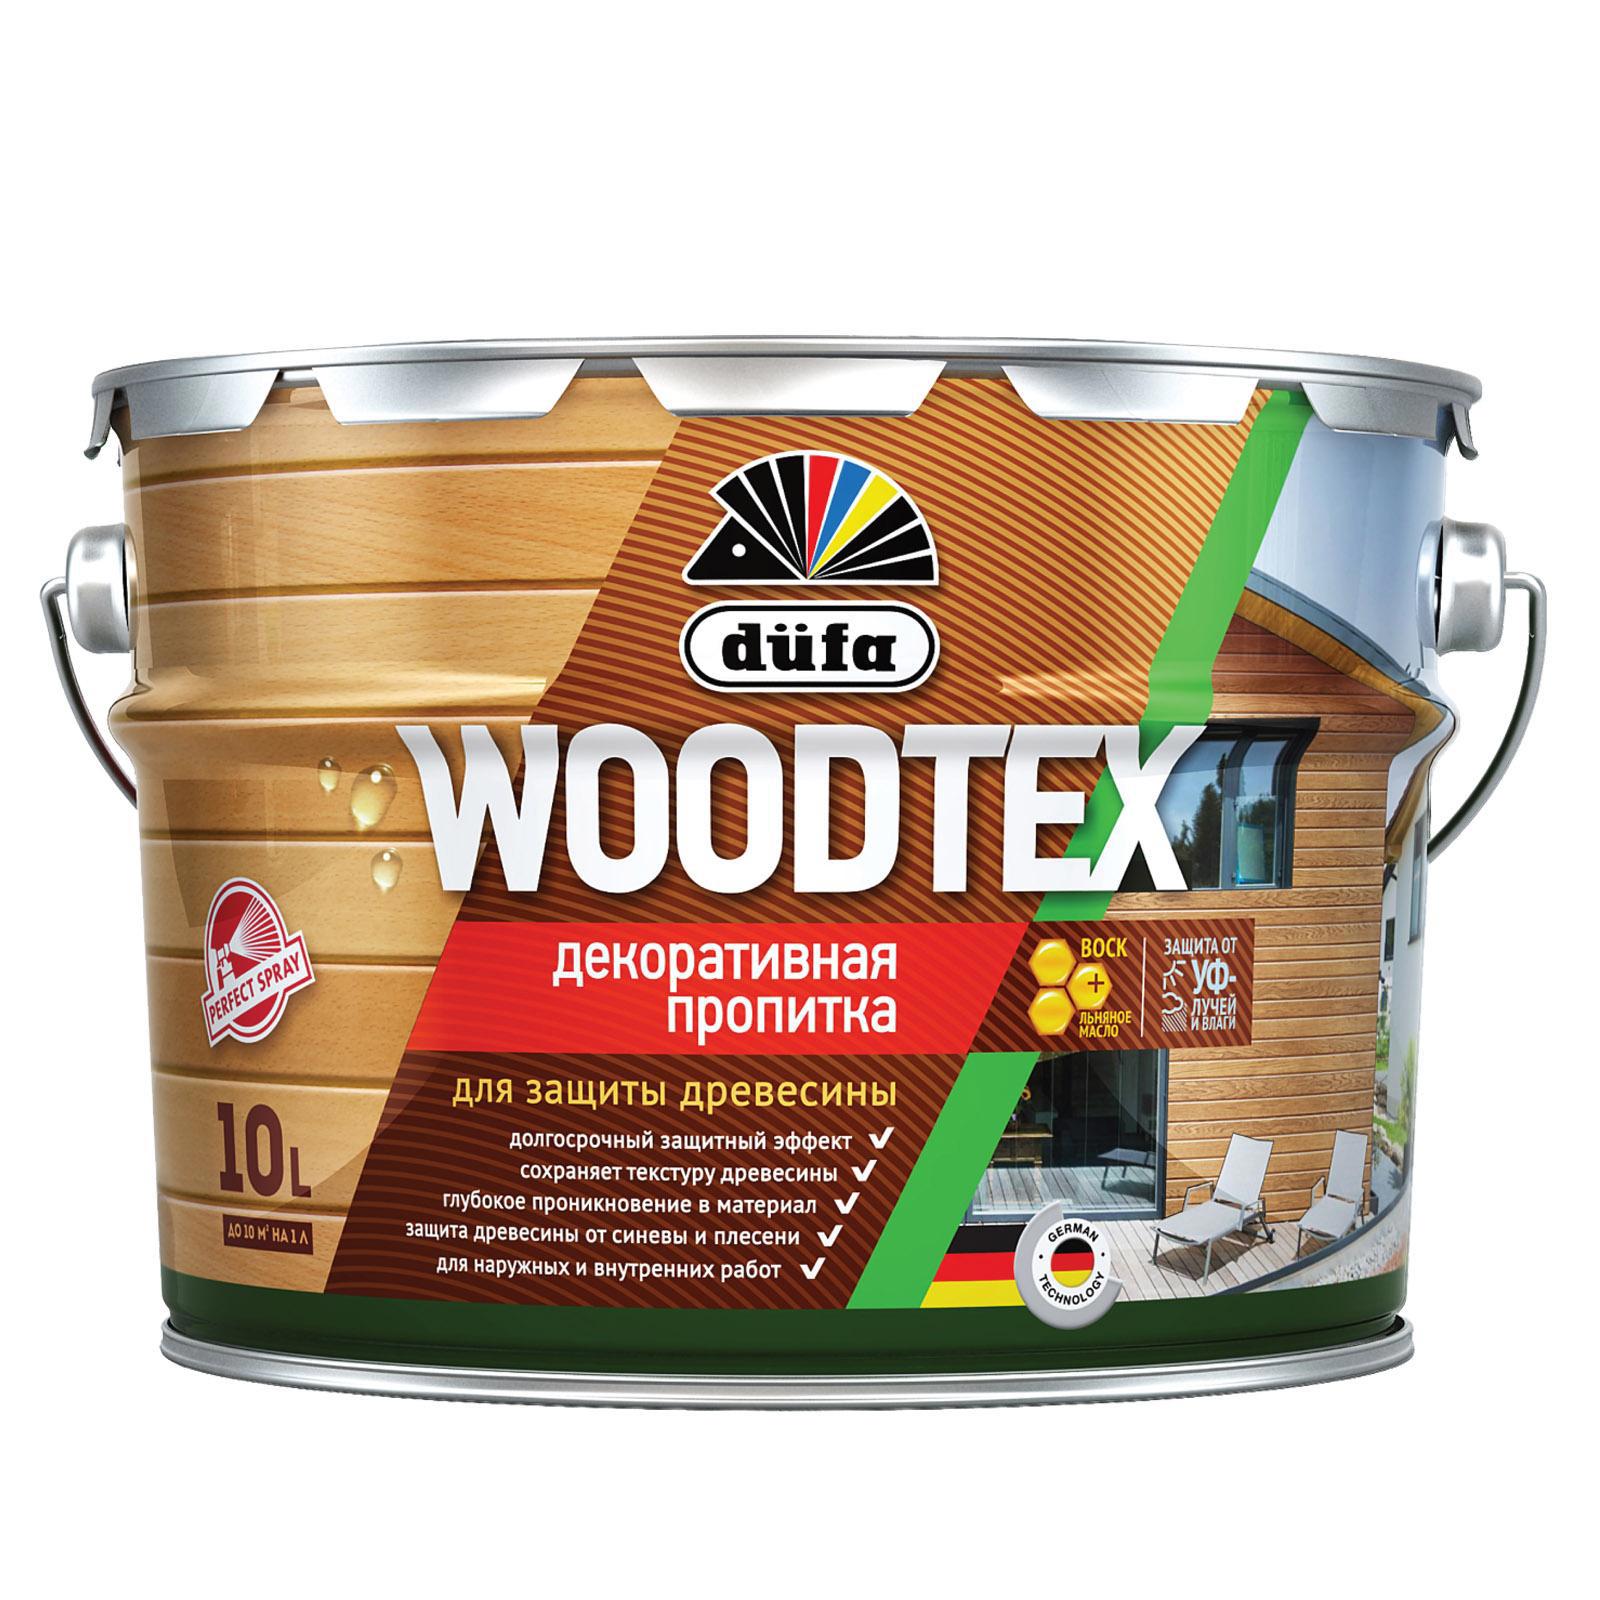 90194542 Пропитка декоративная для защиты древесины алкидная Woodtex венге 10 л STLM-0128474 DUFA